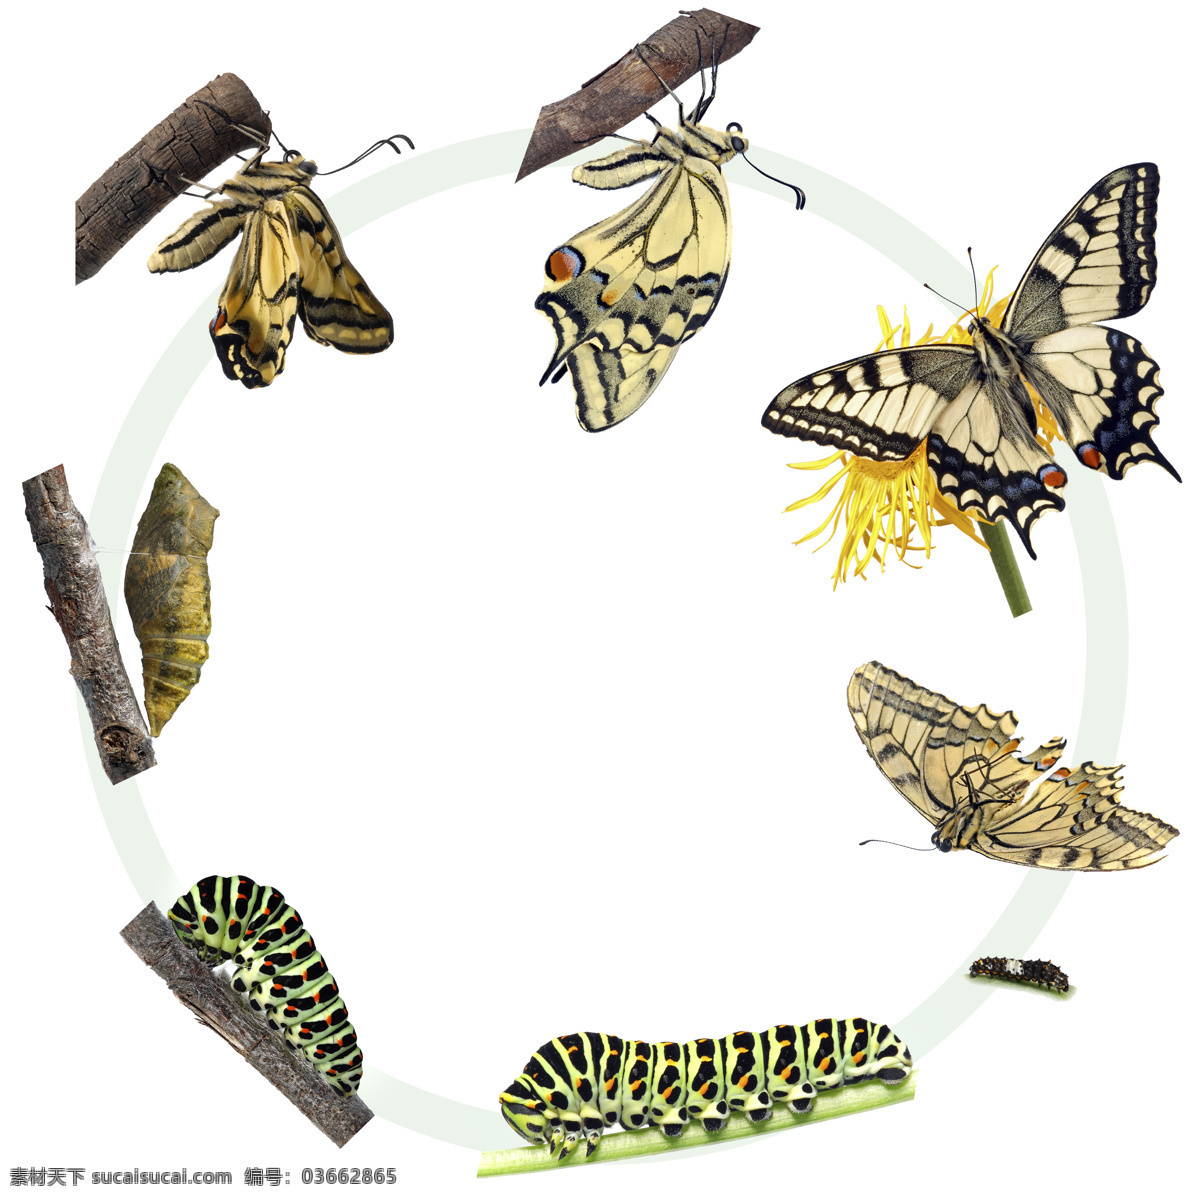 蝶变 完全变态 蛹变蝴蝶 昆虫 科谱 幼虫期 蛹期 成虫期 动物 生物世界